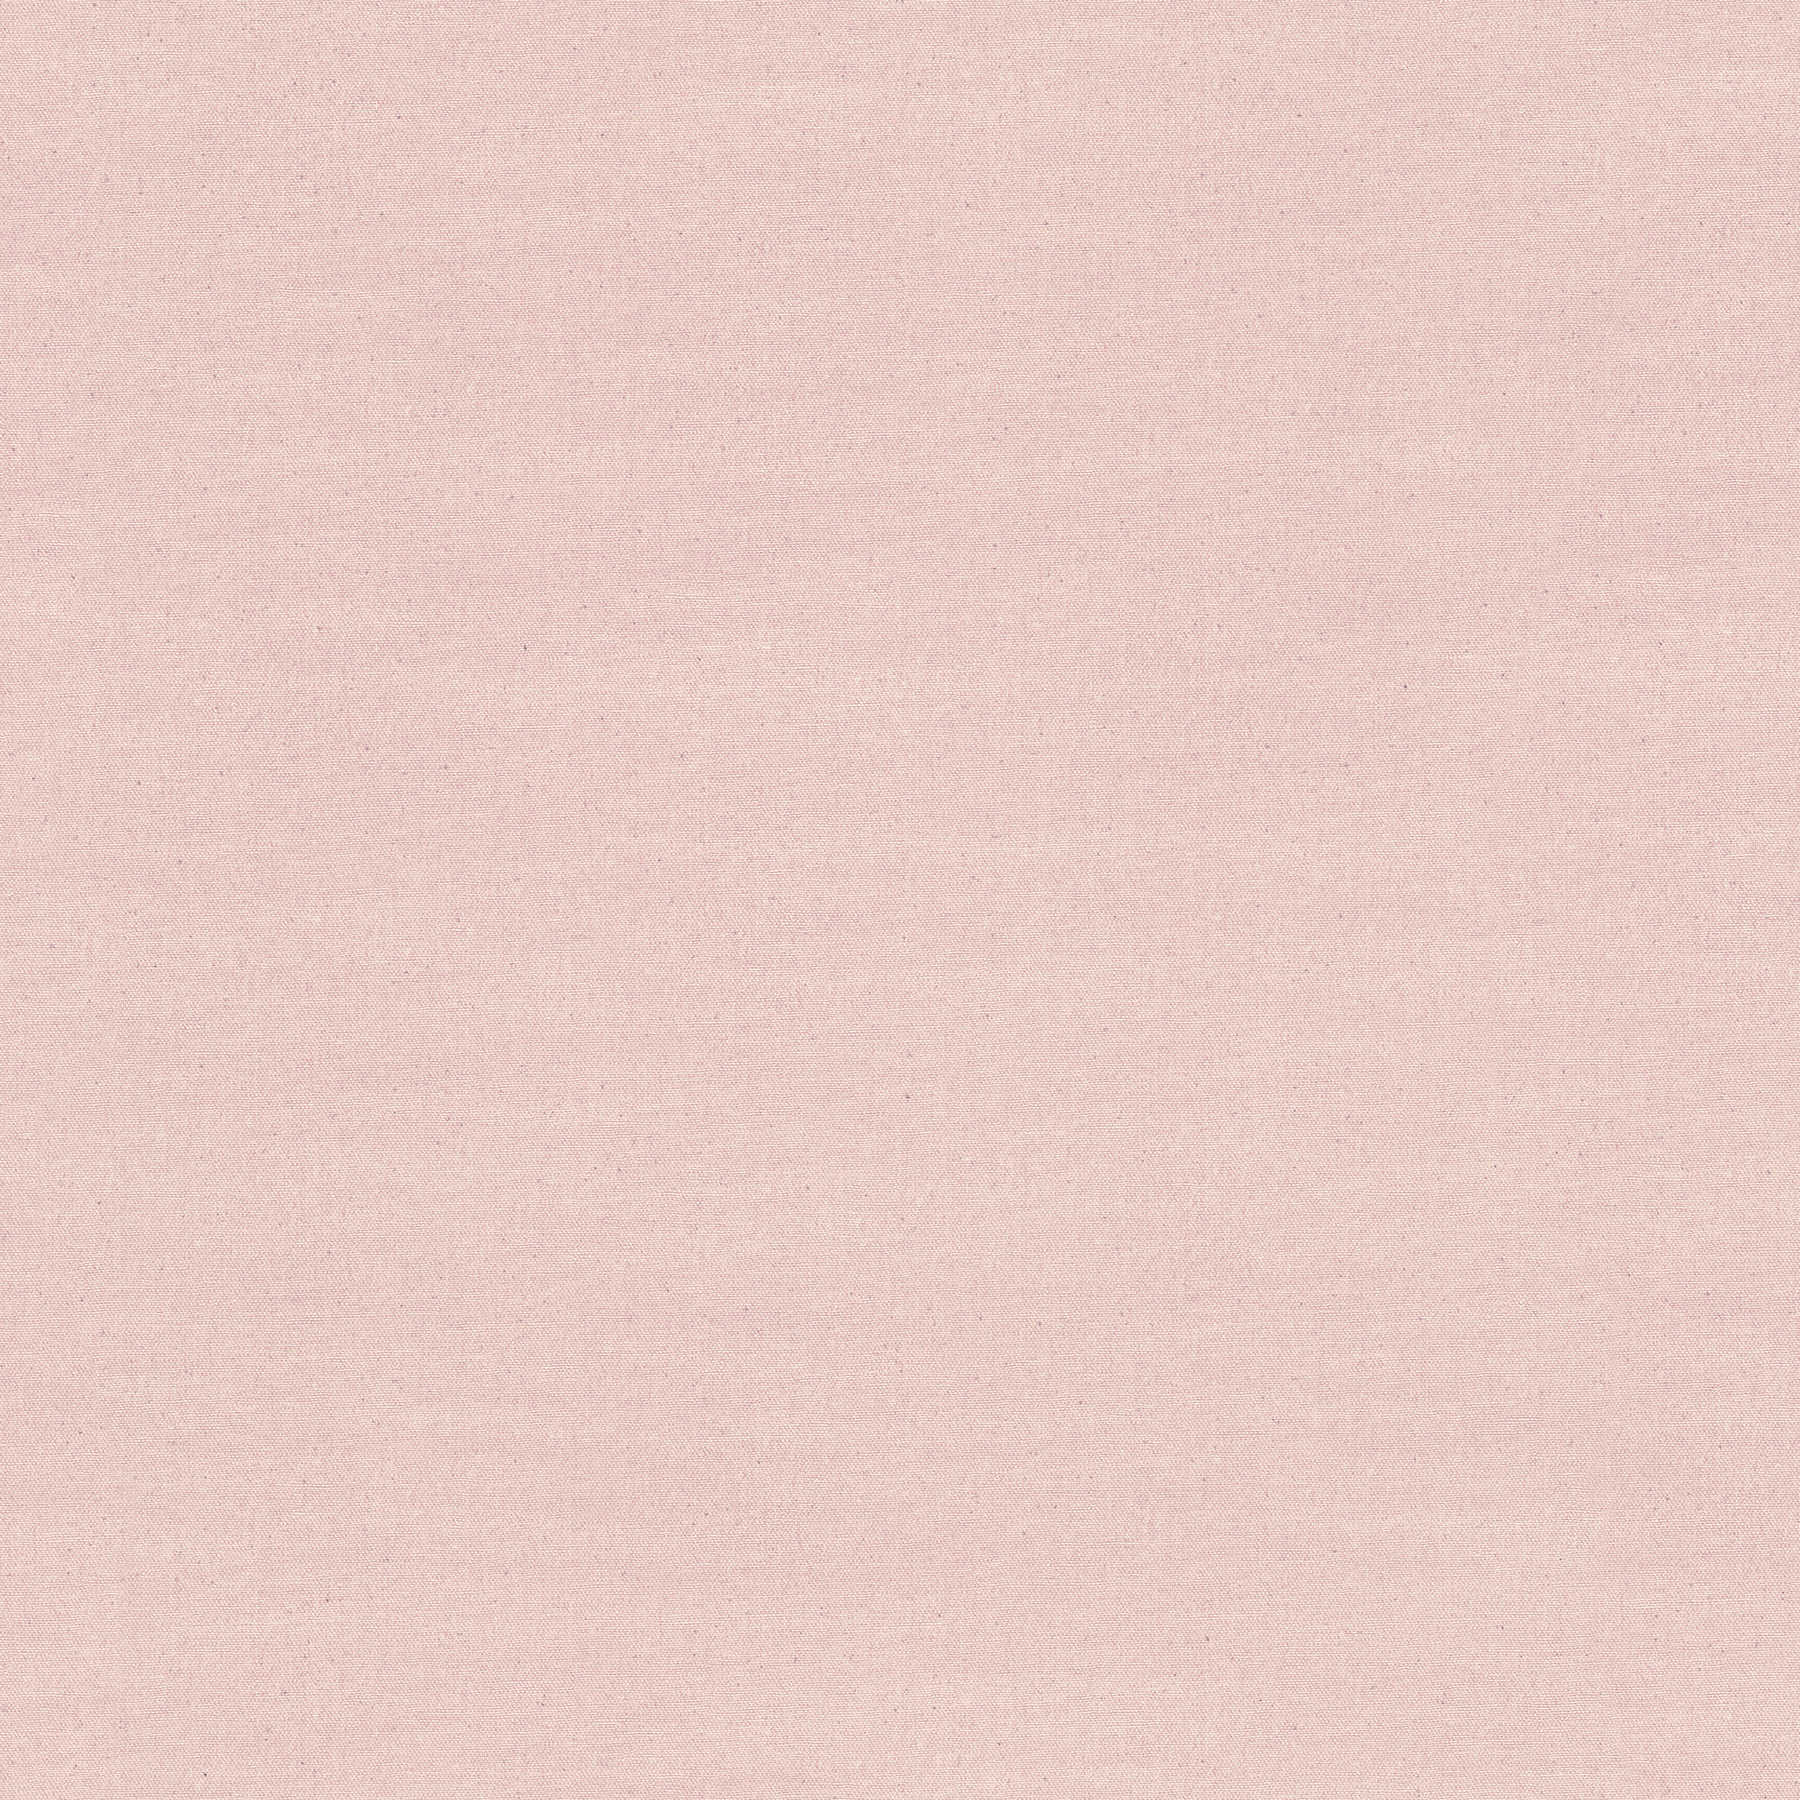 Plain Behang Roze Textiel Ontwerp met Grijze Stippen
